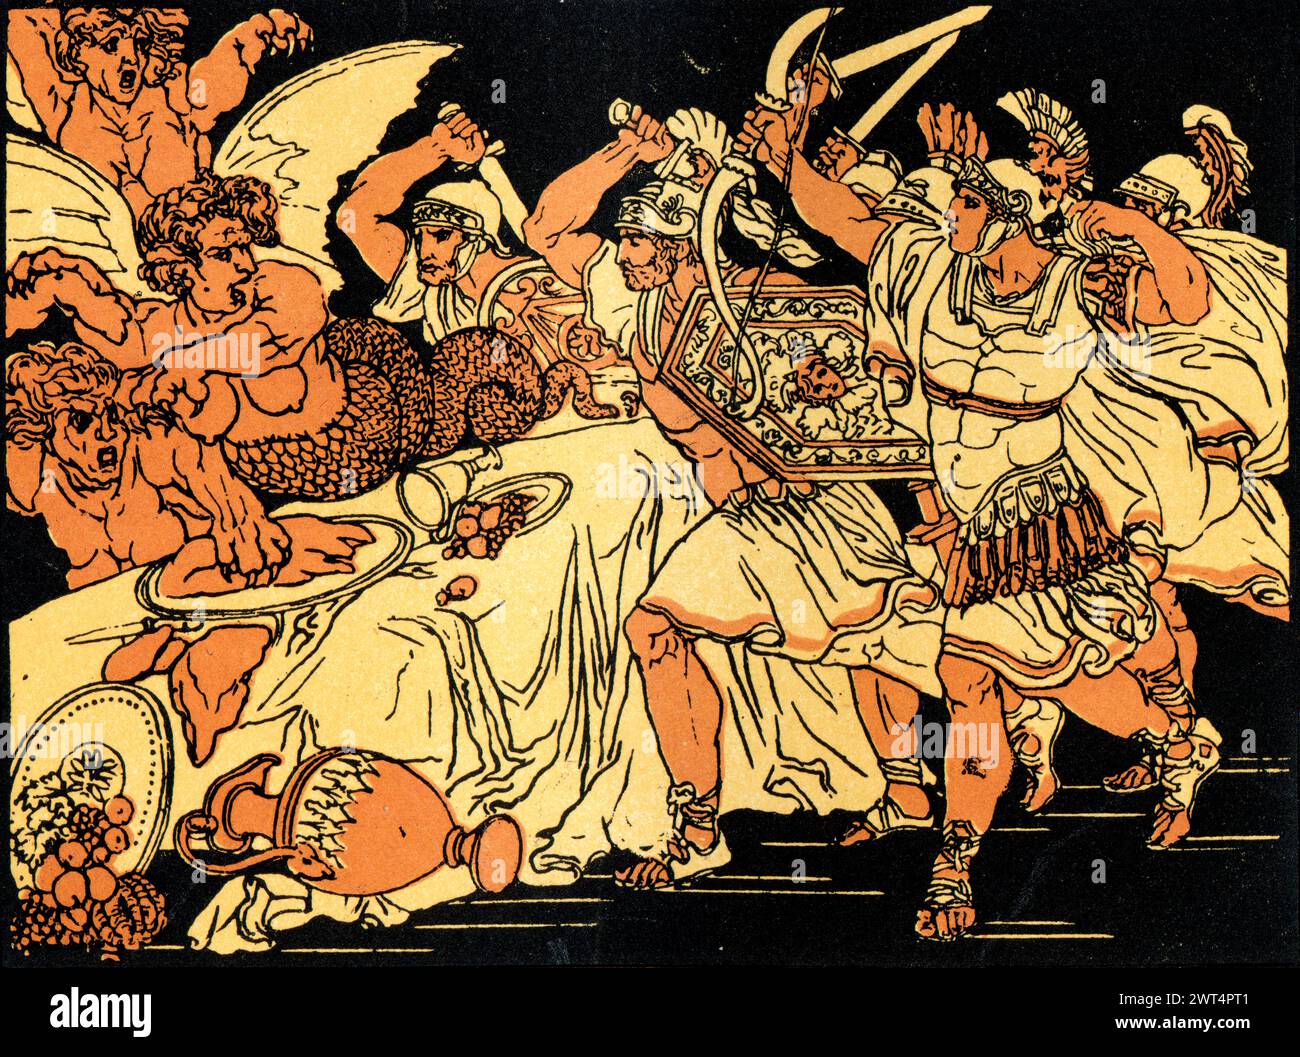 Vintage Illustration römische Mythologie, Schlacht mit Harpyien, Aeneid ein lateinisches Epos, das die legendäre Geschichte von Aeneas erzählt, einem Trojaner, der aus der fa geflohen ist Stockfoto